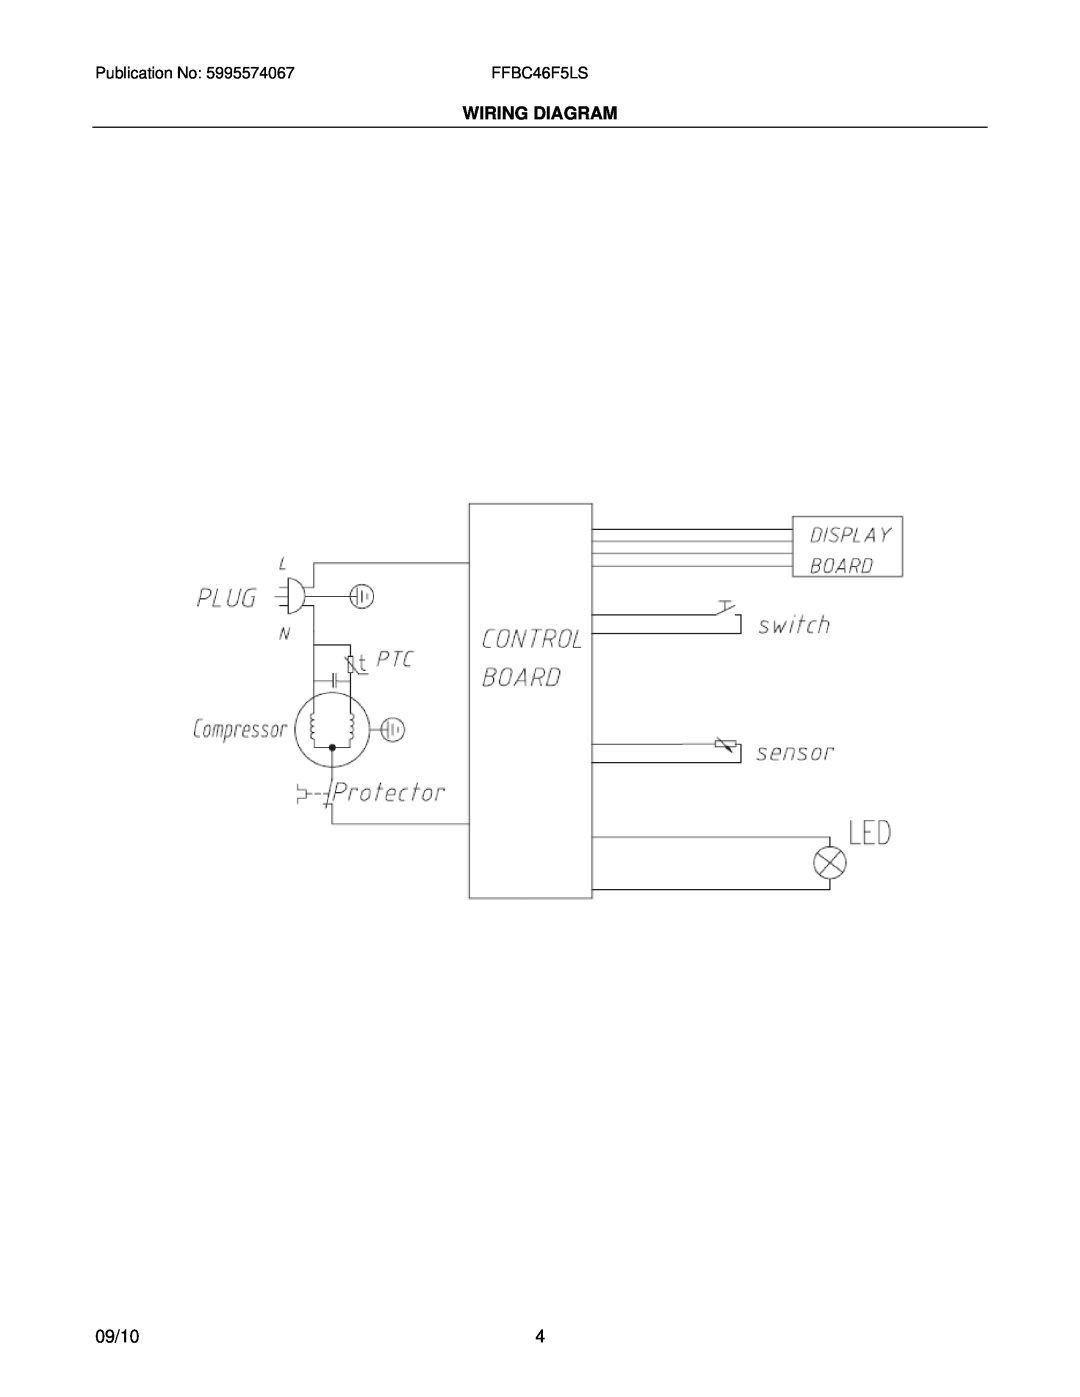 Frigidaire FFBC46F5L manual Wiring Diagram, 09/10 